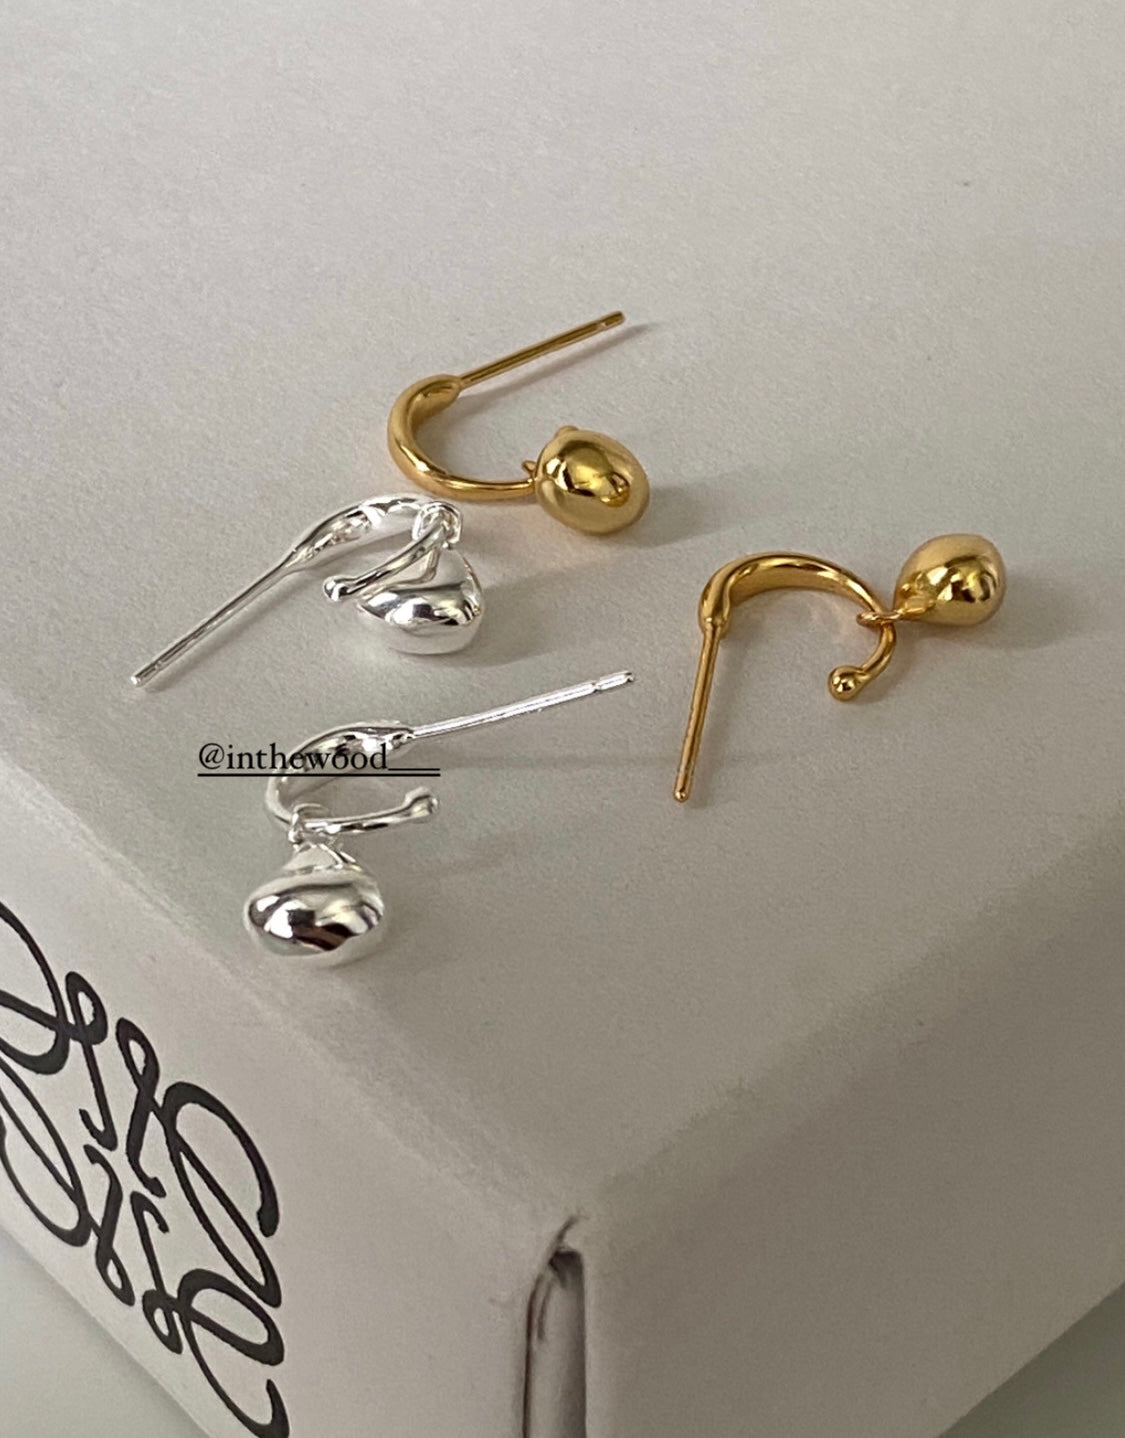 [925silver] C Drop Earrings